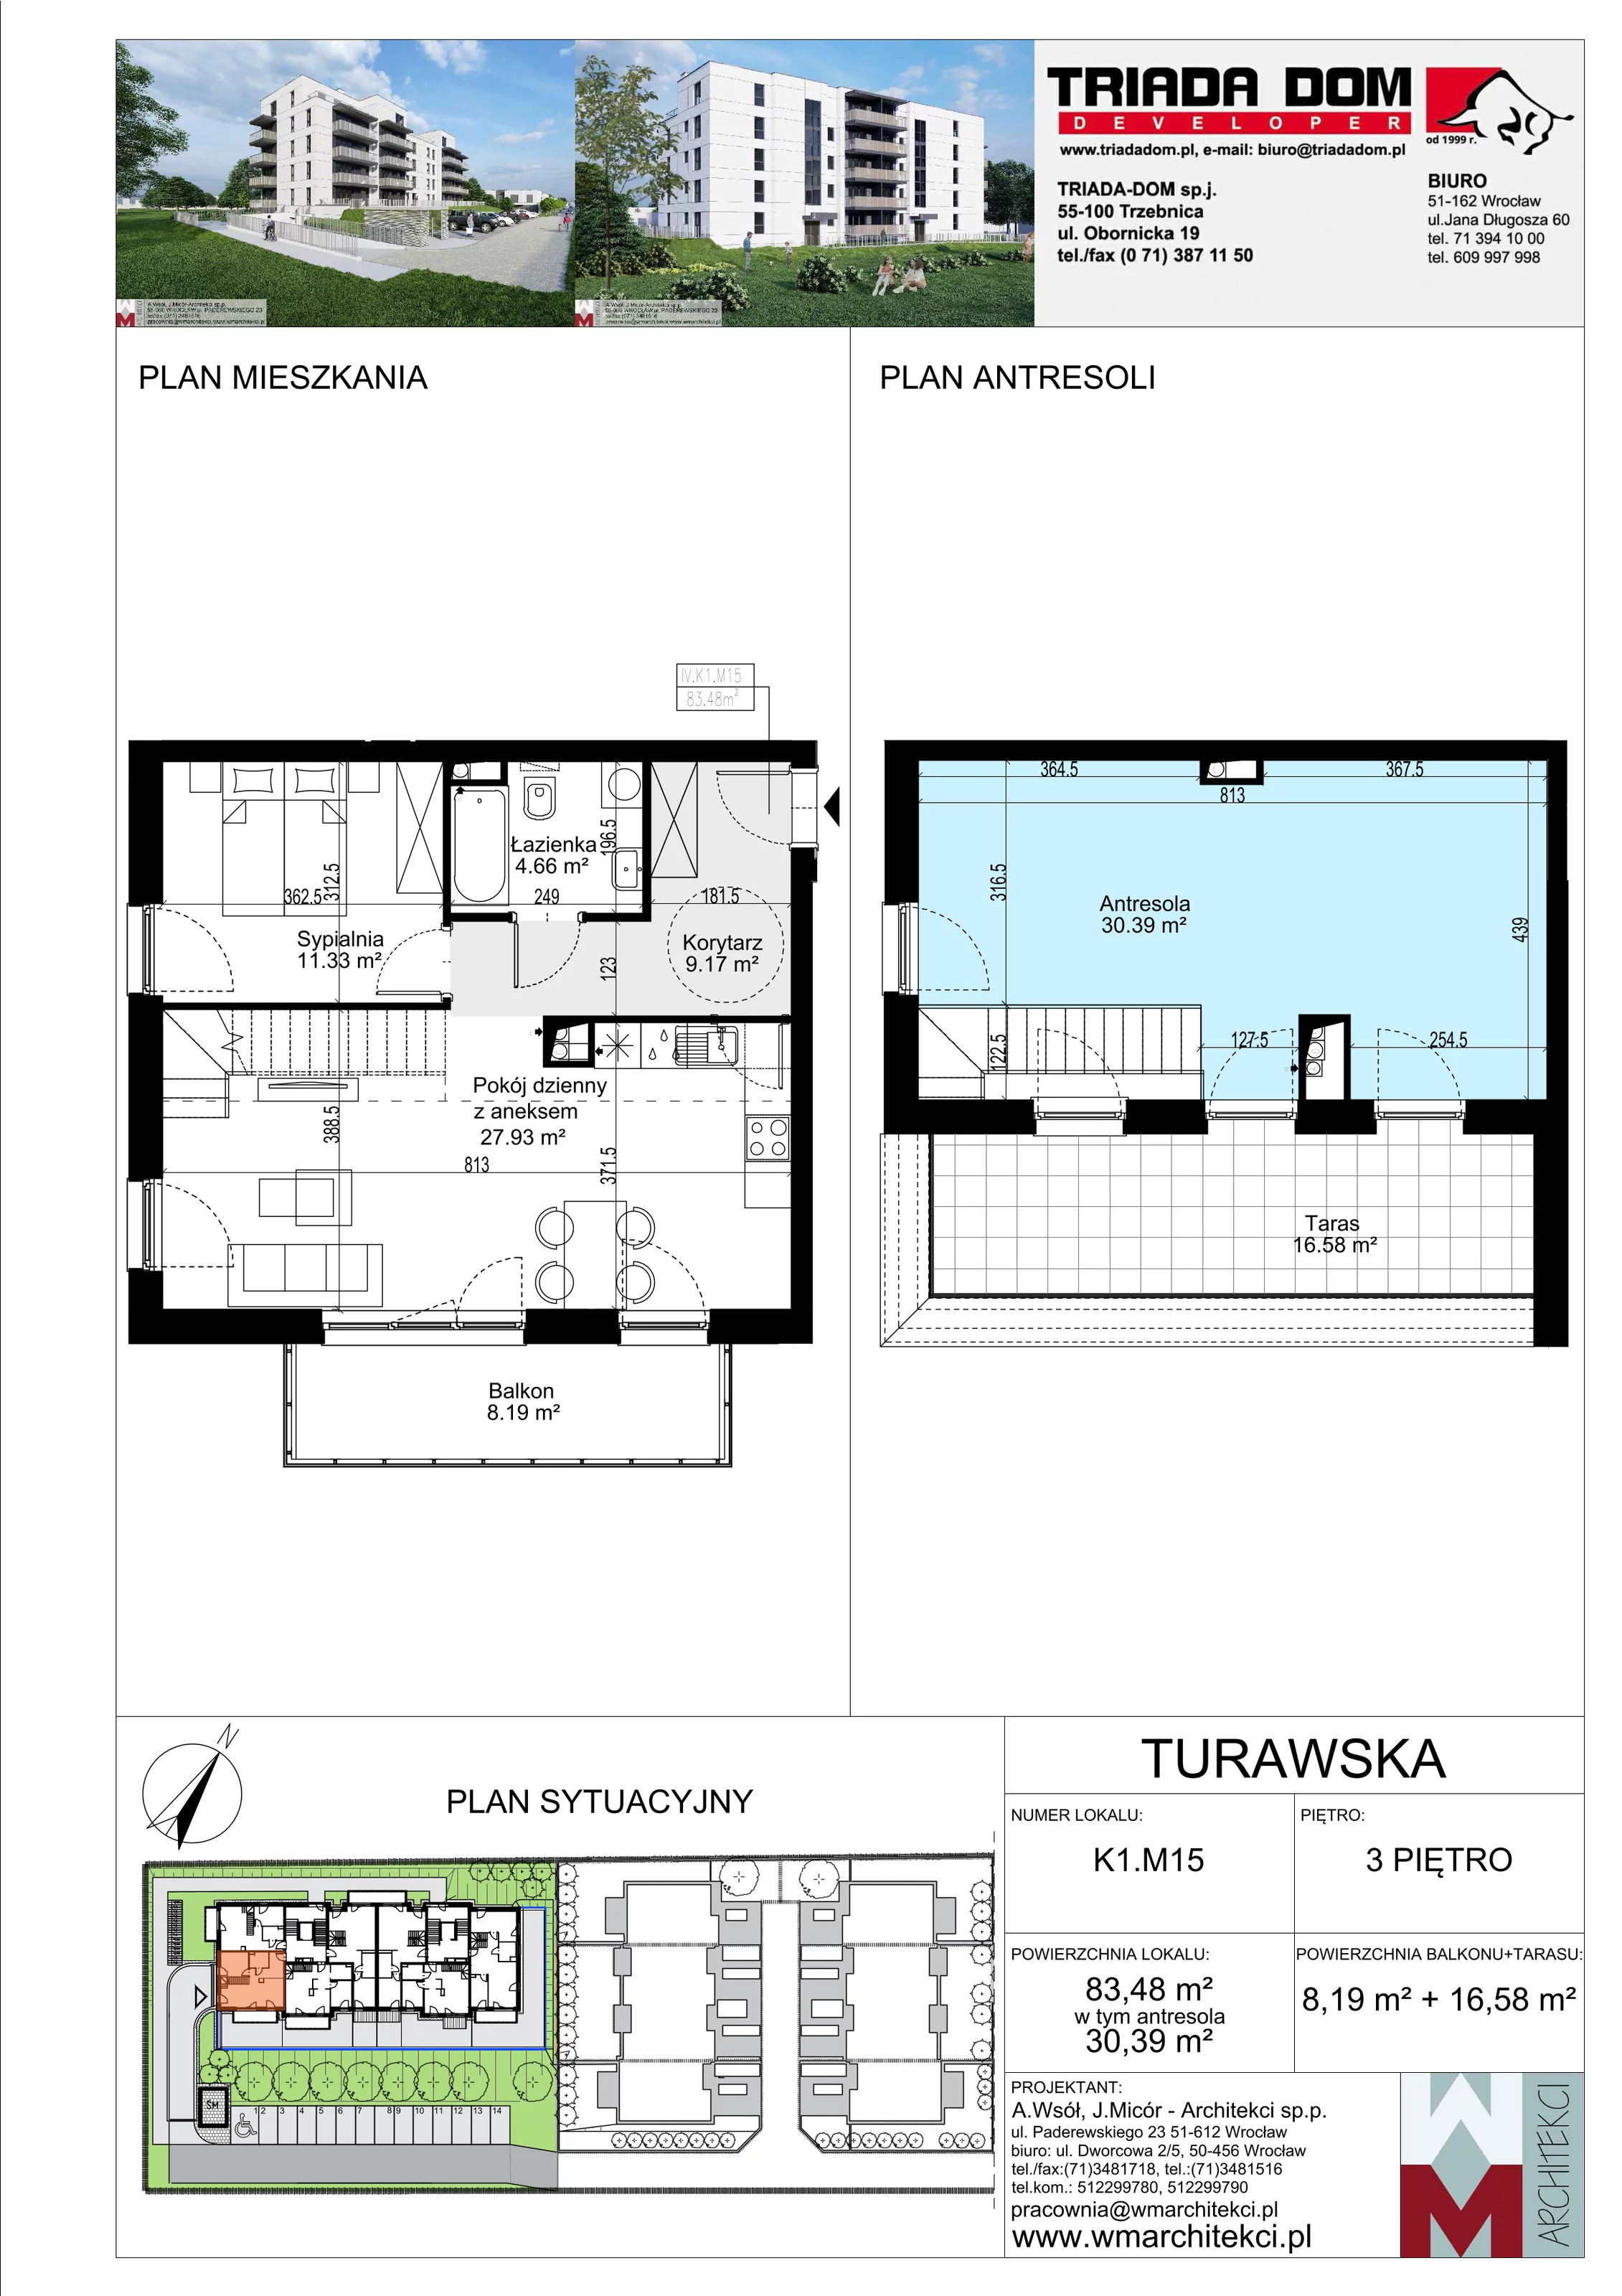 Mieszkanie 83,48 m², piętro 3, oferta nr K1.M15, Ogrody Turawska, Wrocław, Księże, Krzyki, ul. Turawska 78